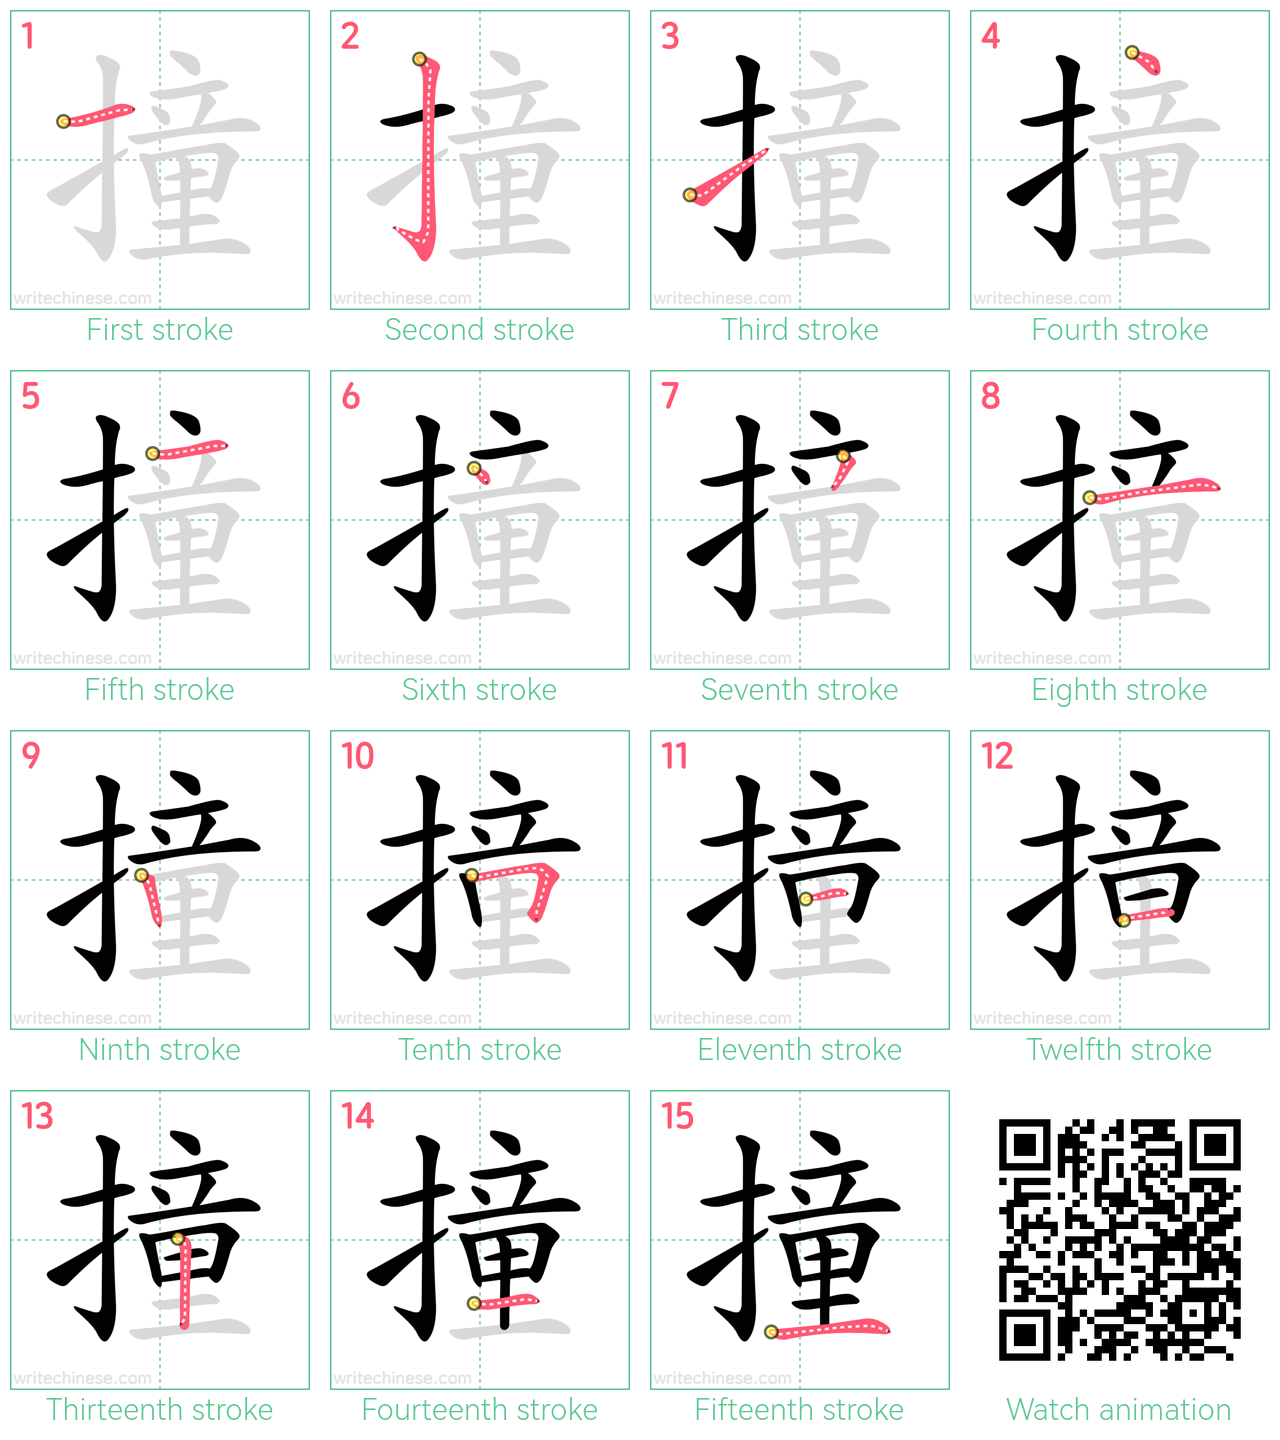 撞 step-by-step stroke order diagrams